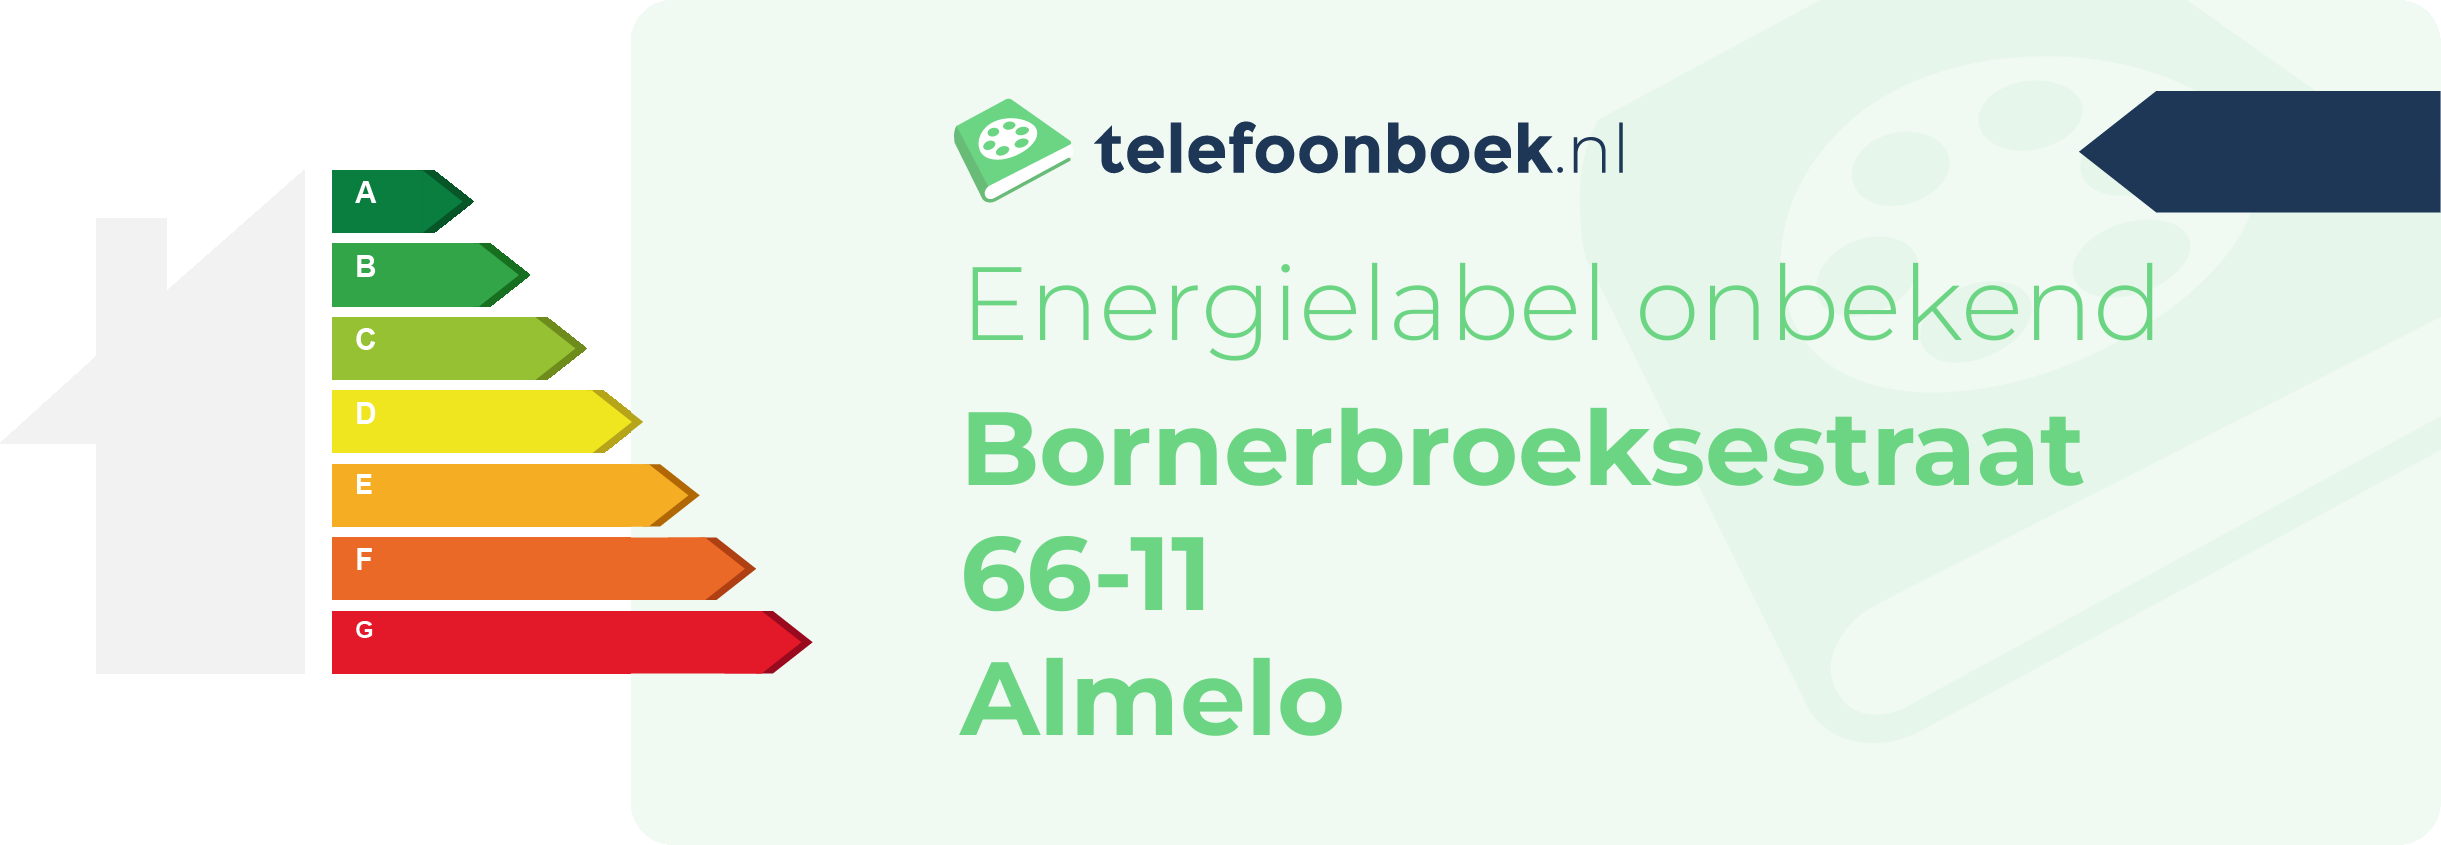 Energielabel Bornerbroeksestraat 66-11 Almelo